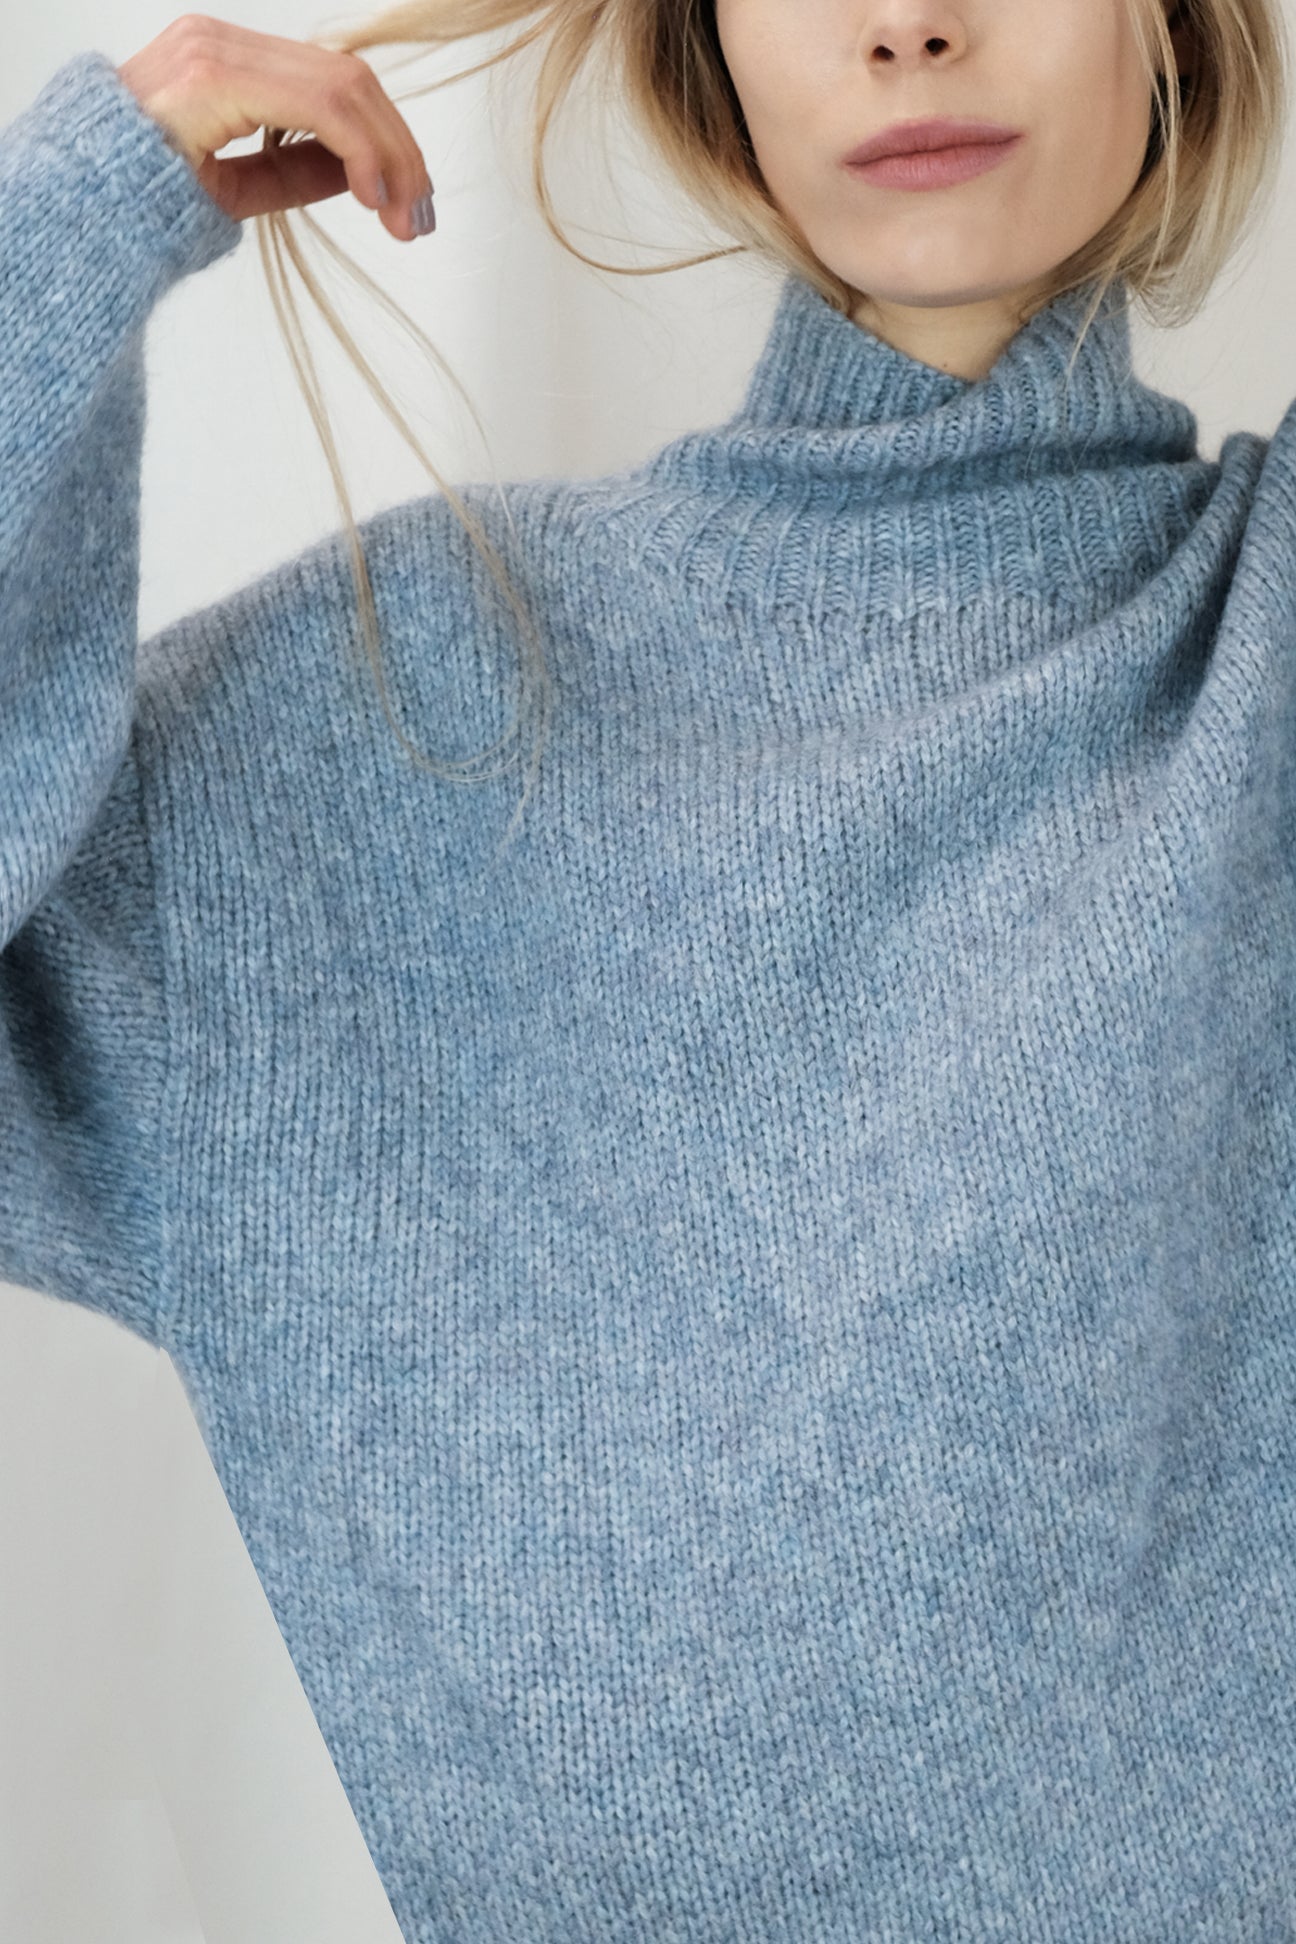 Steel Blue Funnel Neck Sweater